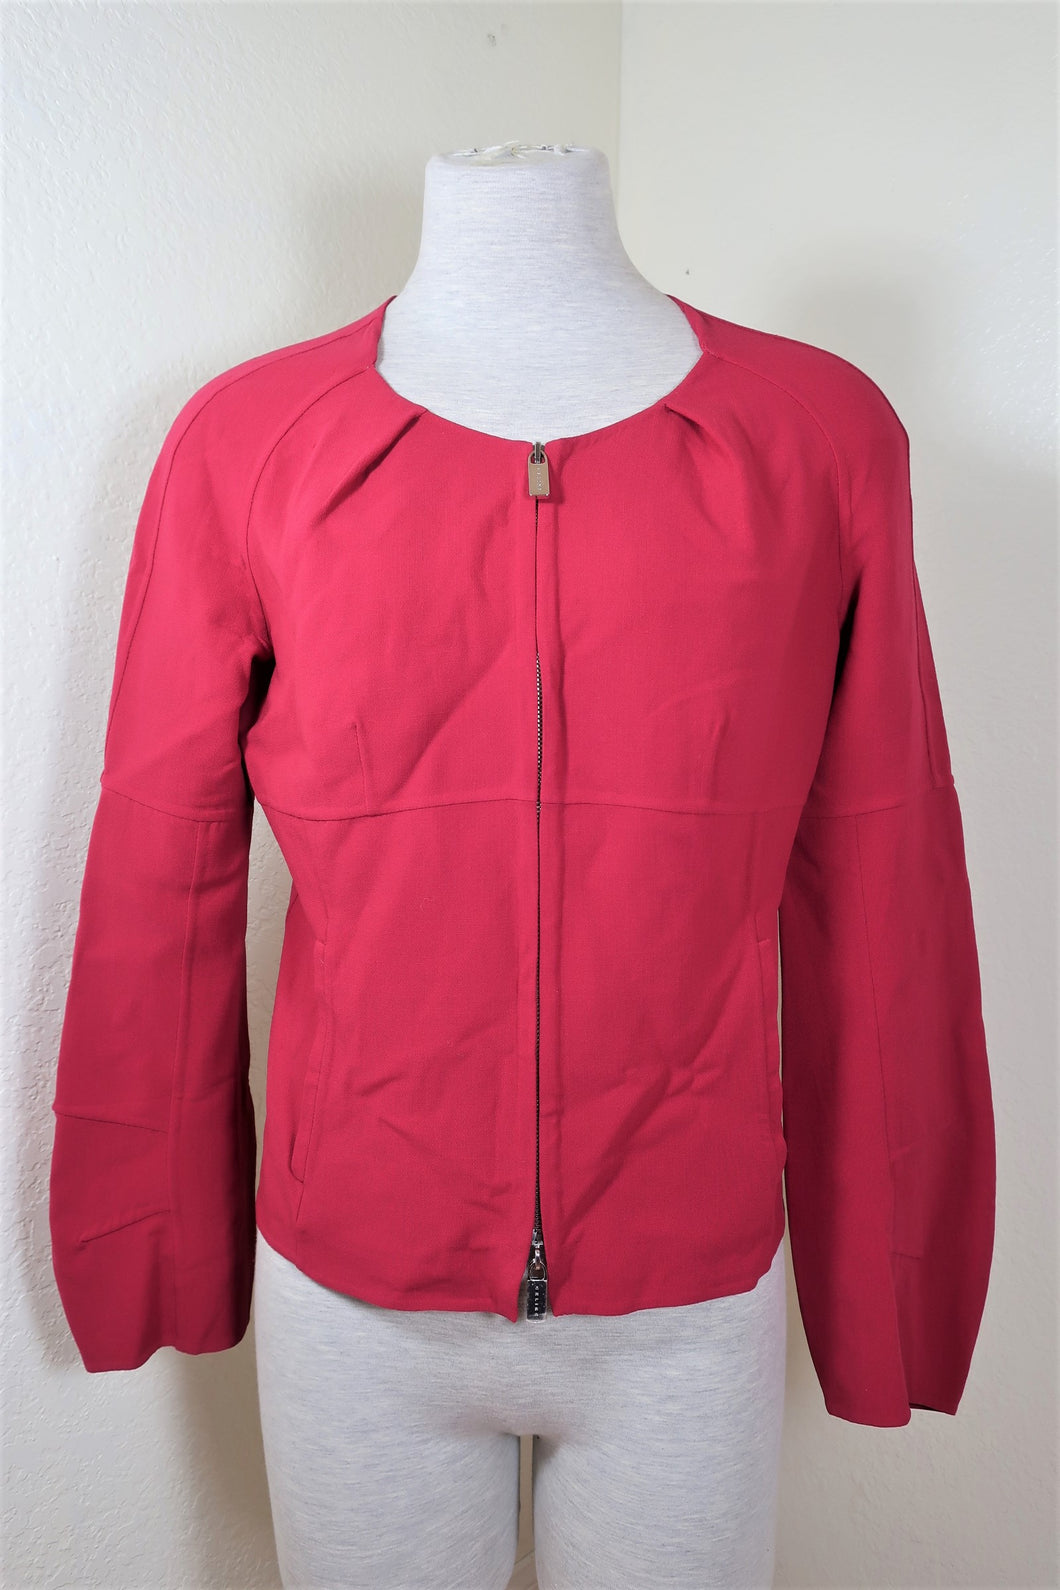 CELINE Deep PINK Finition Main Wool Zip Long Sleeves Blazer Jacket sz. 40 4 5 6